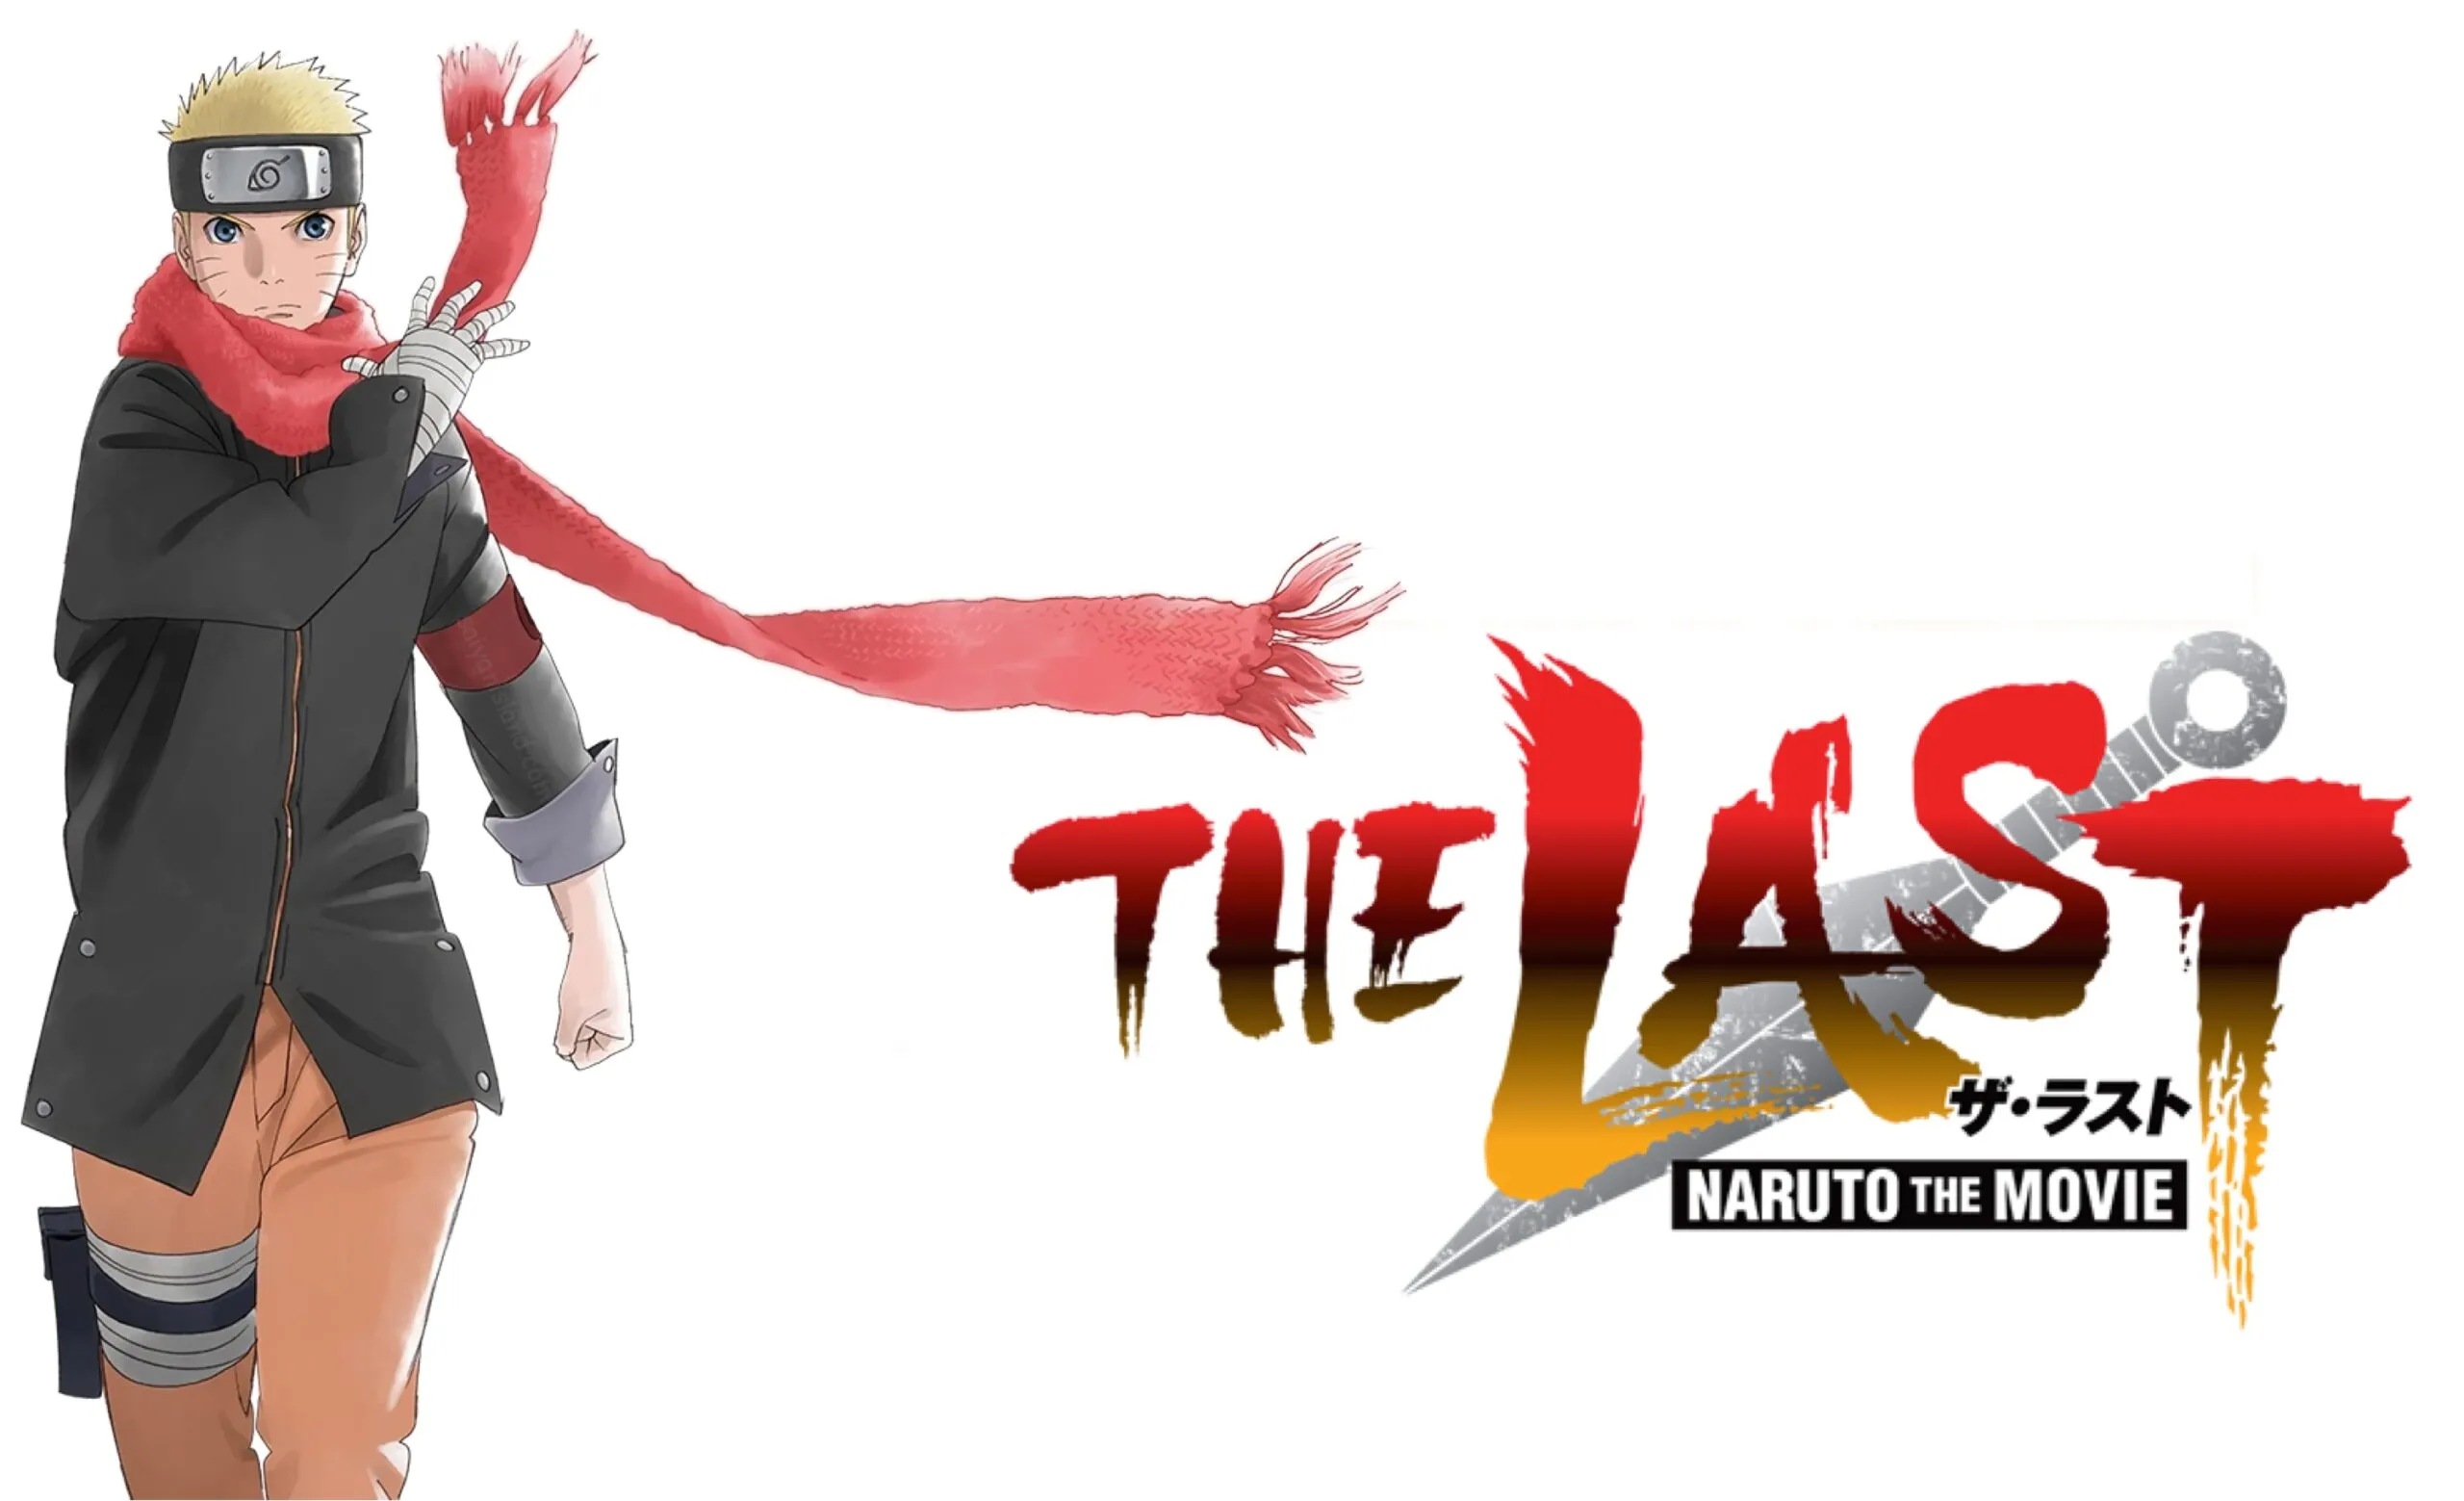 Posibles spoilers de la película de The Last -Naruto The Movie-